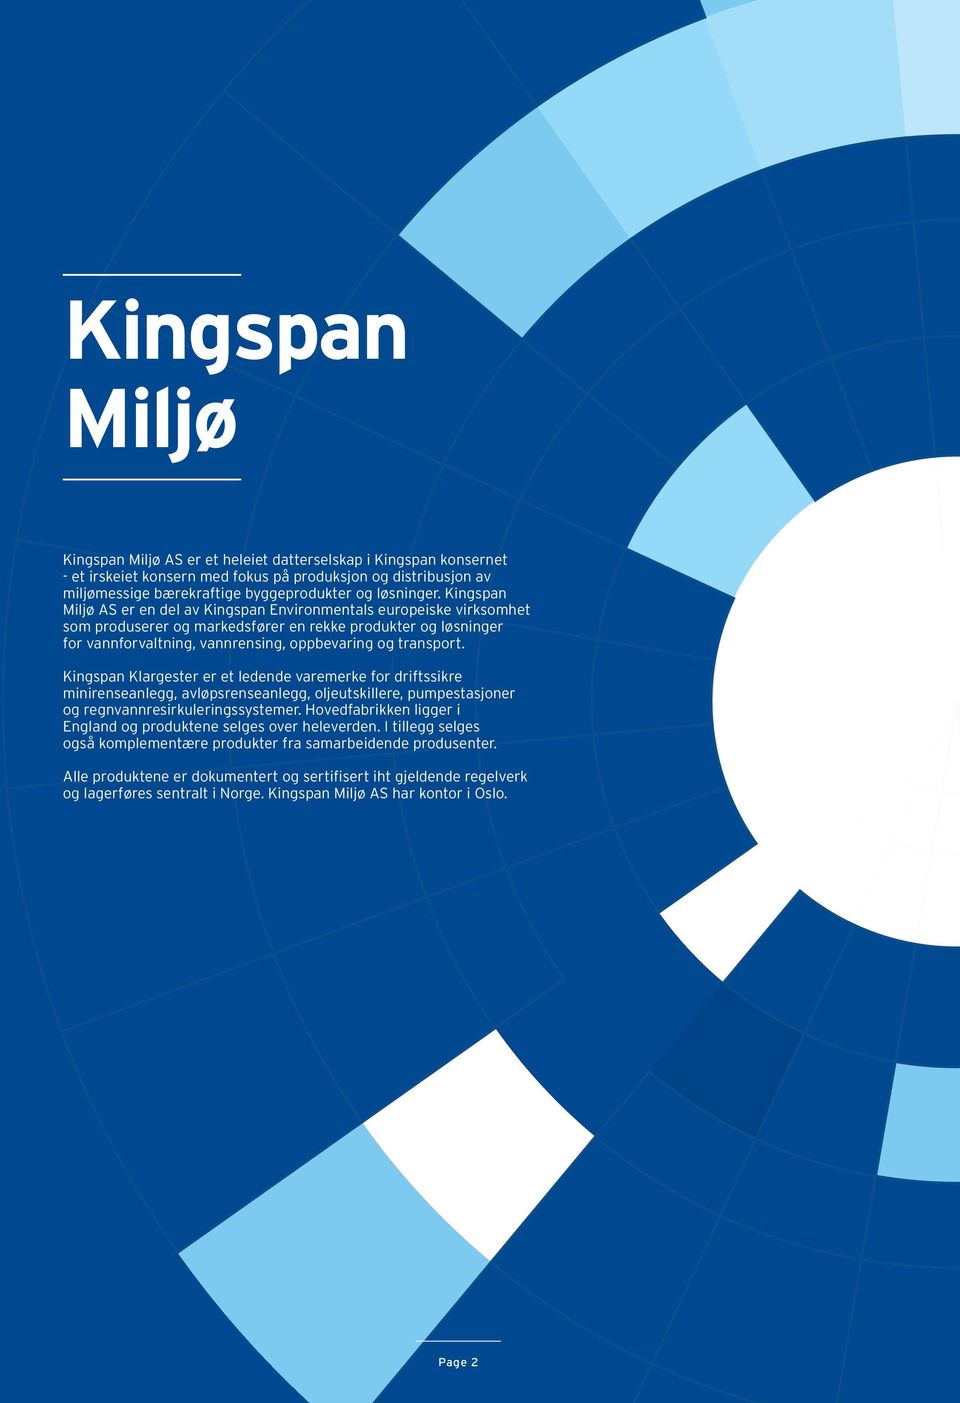 Kingspan Miljø AS er en del av Kingspan Environmentals europeiske virksomhet som produserer og markedsfører en rekke produkter og løsninger for vannforvaltning, vannrensing, oppbevaring og transport.